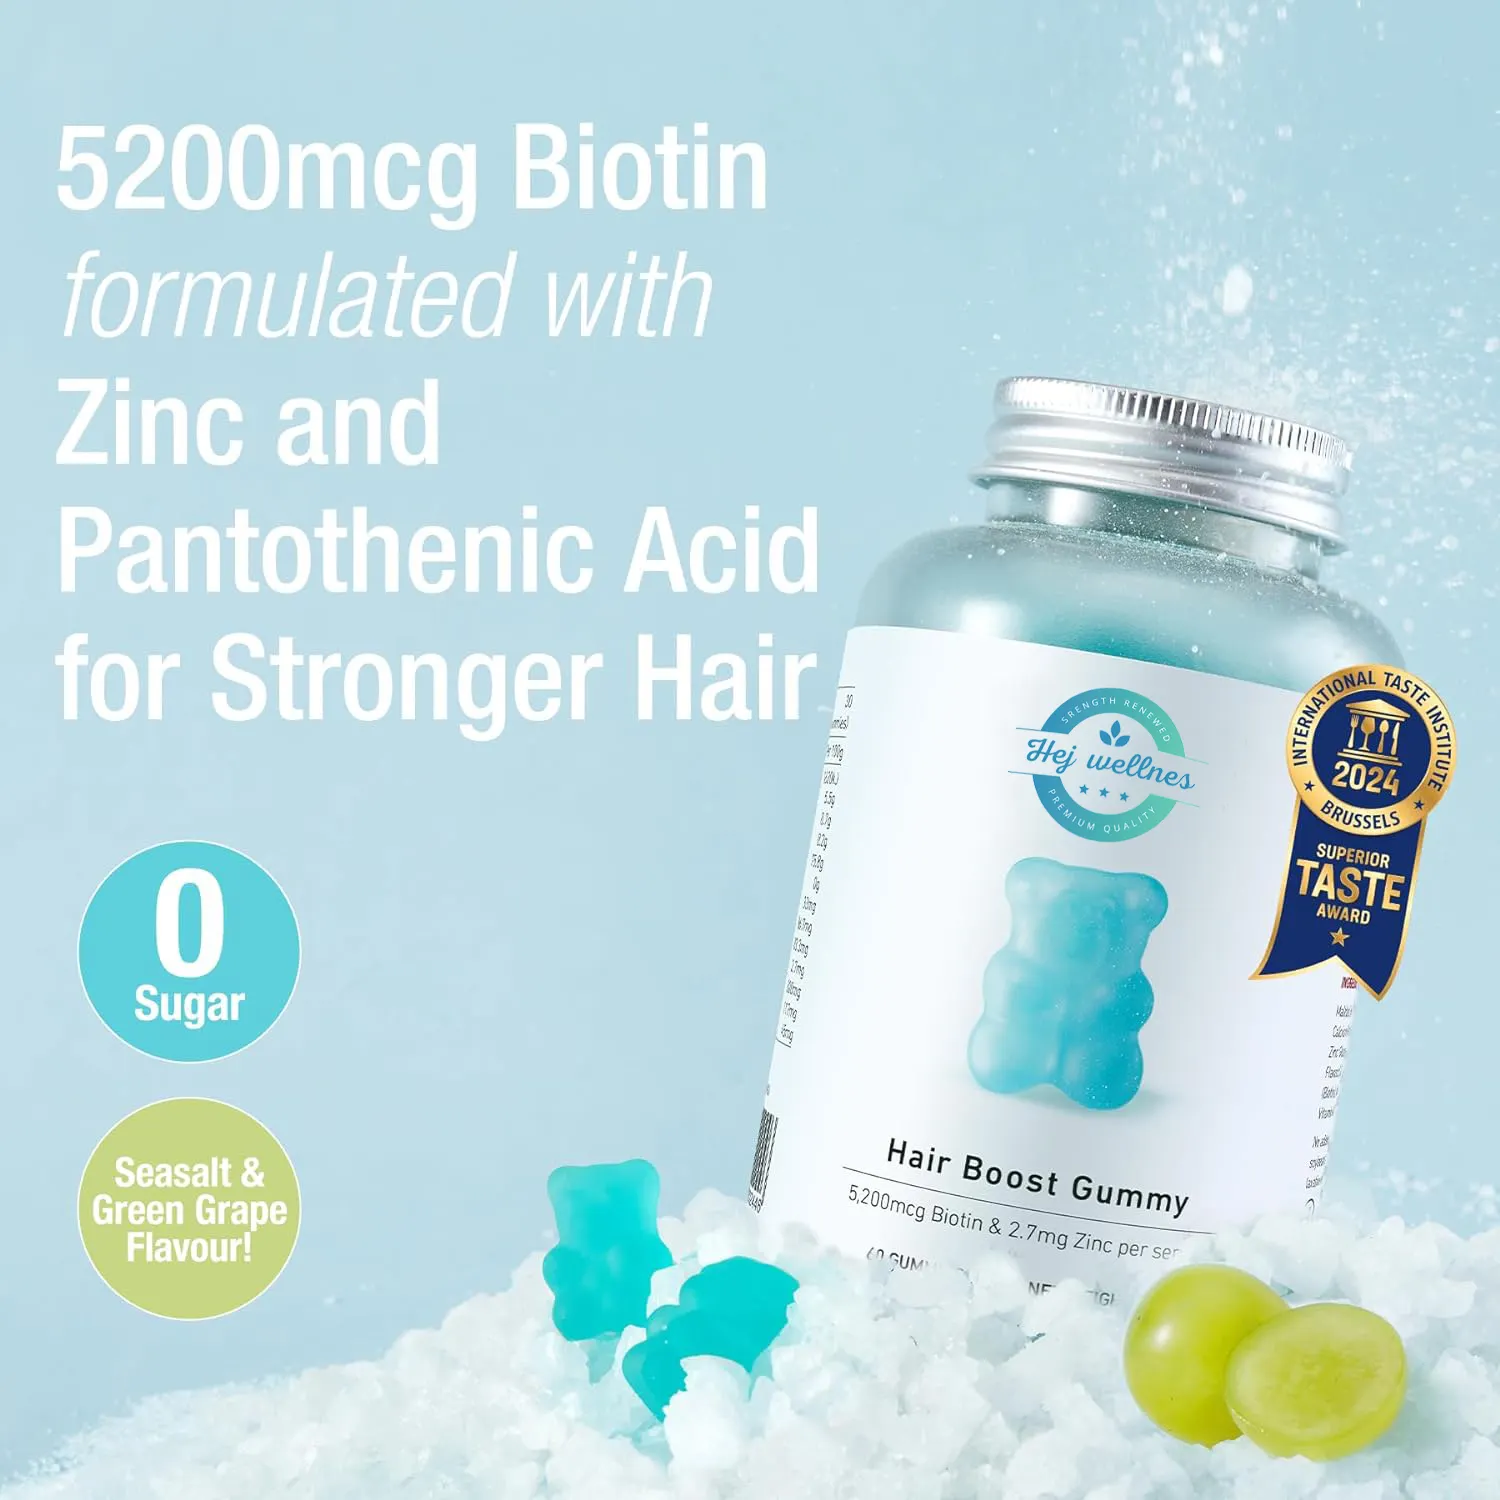 ऑर्गेनिक बायोटिन जिंक फोलिक एसिड समुद्री नमक गमी मल्टीविटामिन बियर विटामिन सी हेयर ग्रोथ गमियां बालों के झड़ने को कम करने में मदद करती हैं